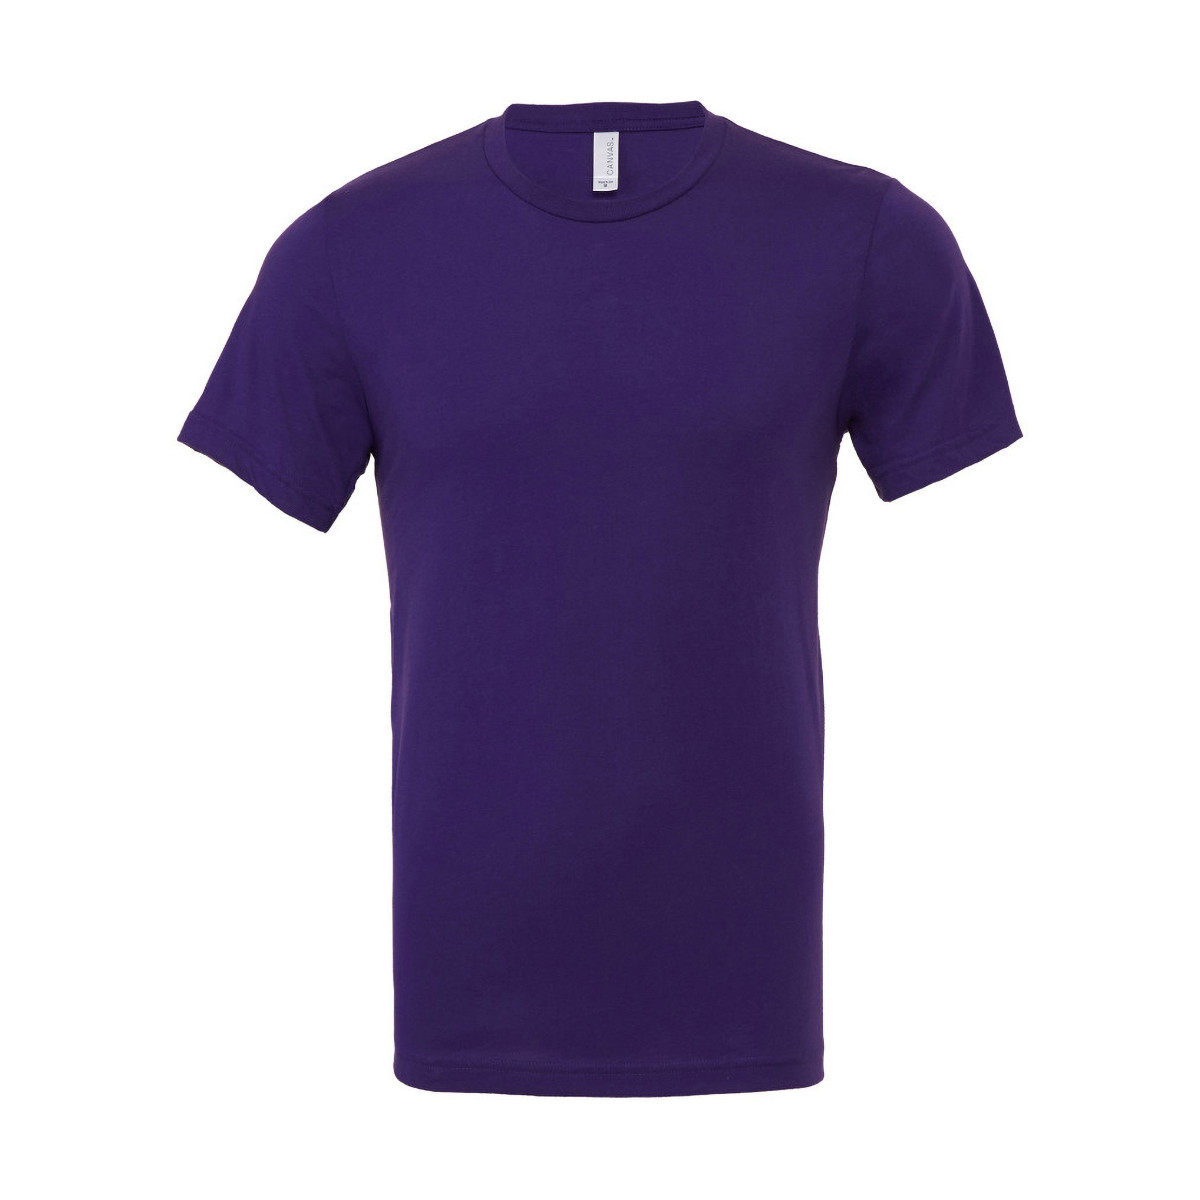 Vêtements Homme T-shirts manches courtes Bella + Canvas CA3001 Violet